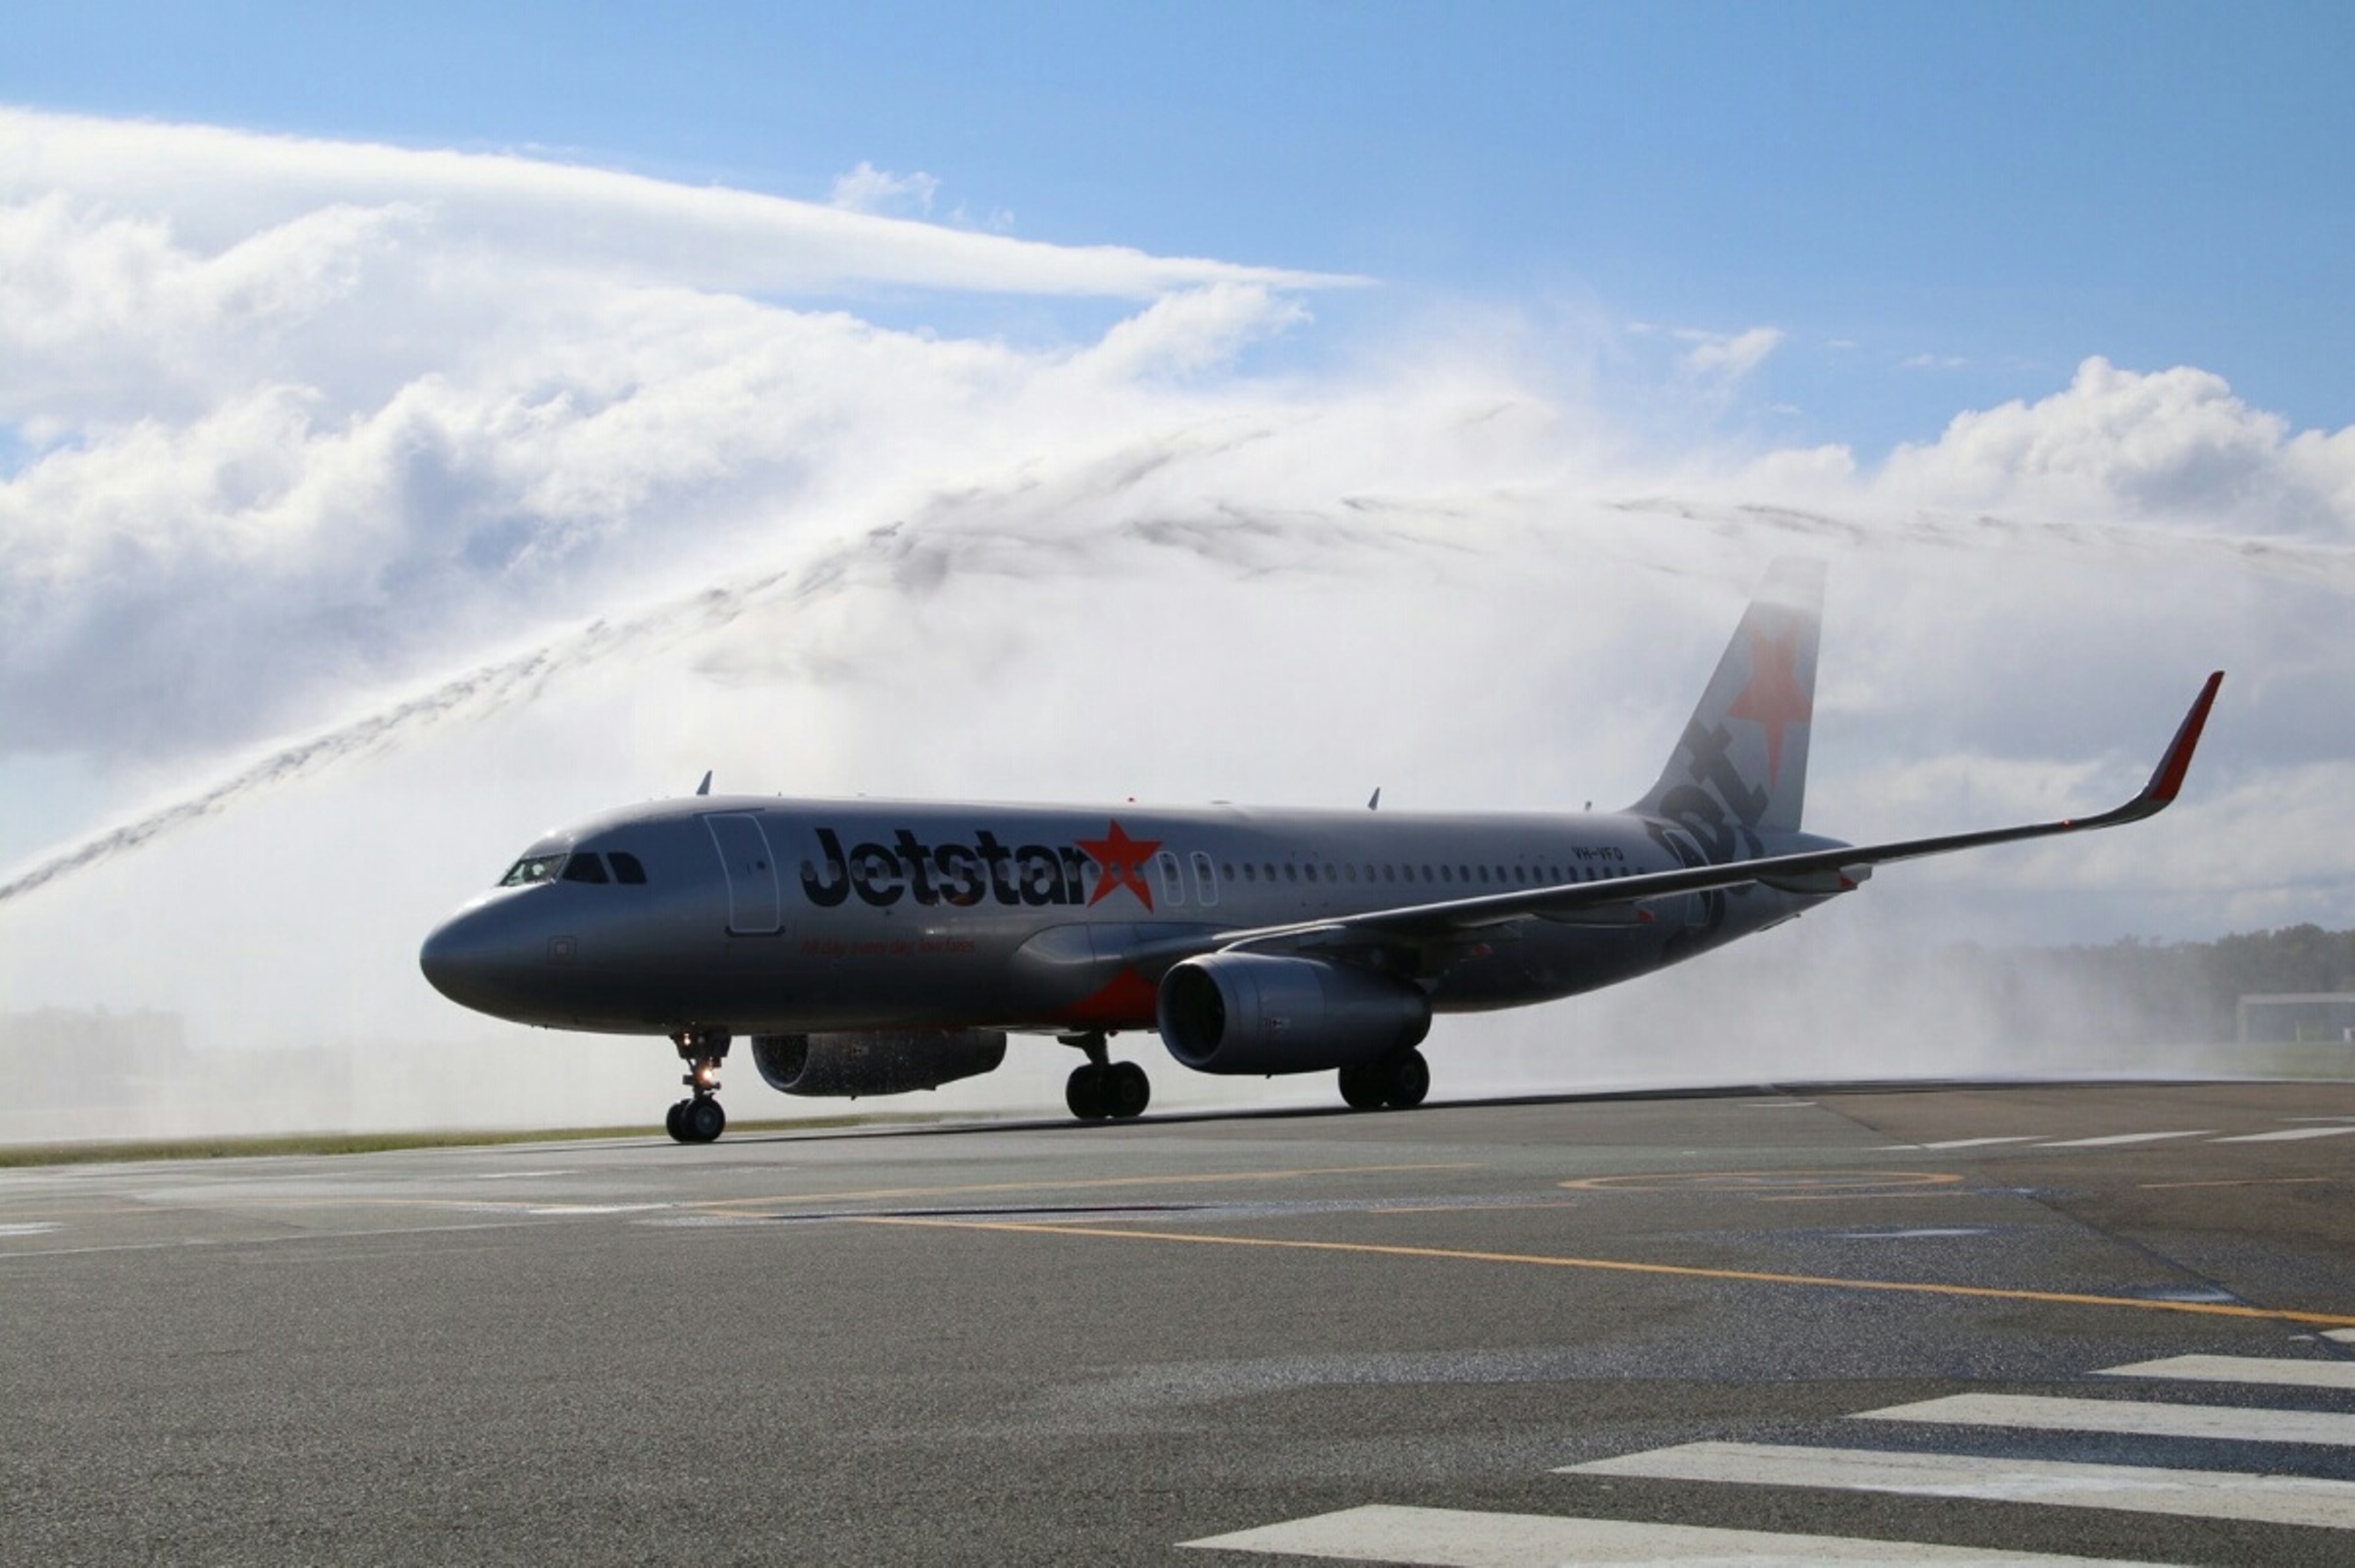 Jetstar inaugural flight arrives from ADL